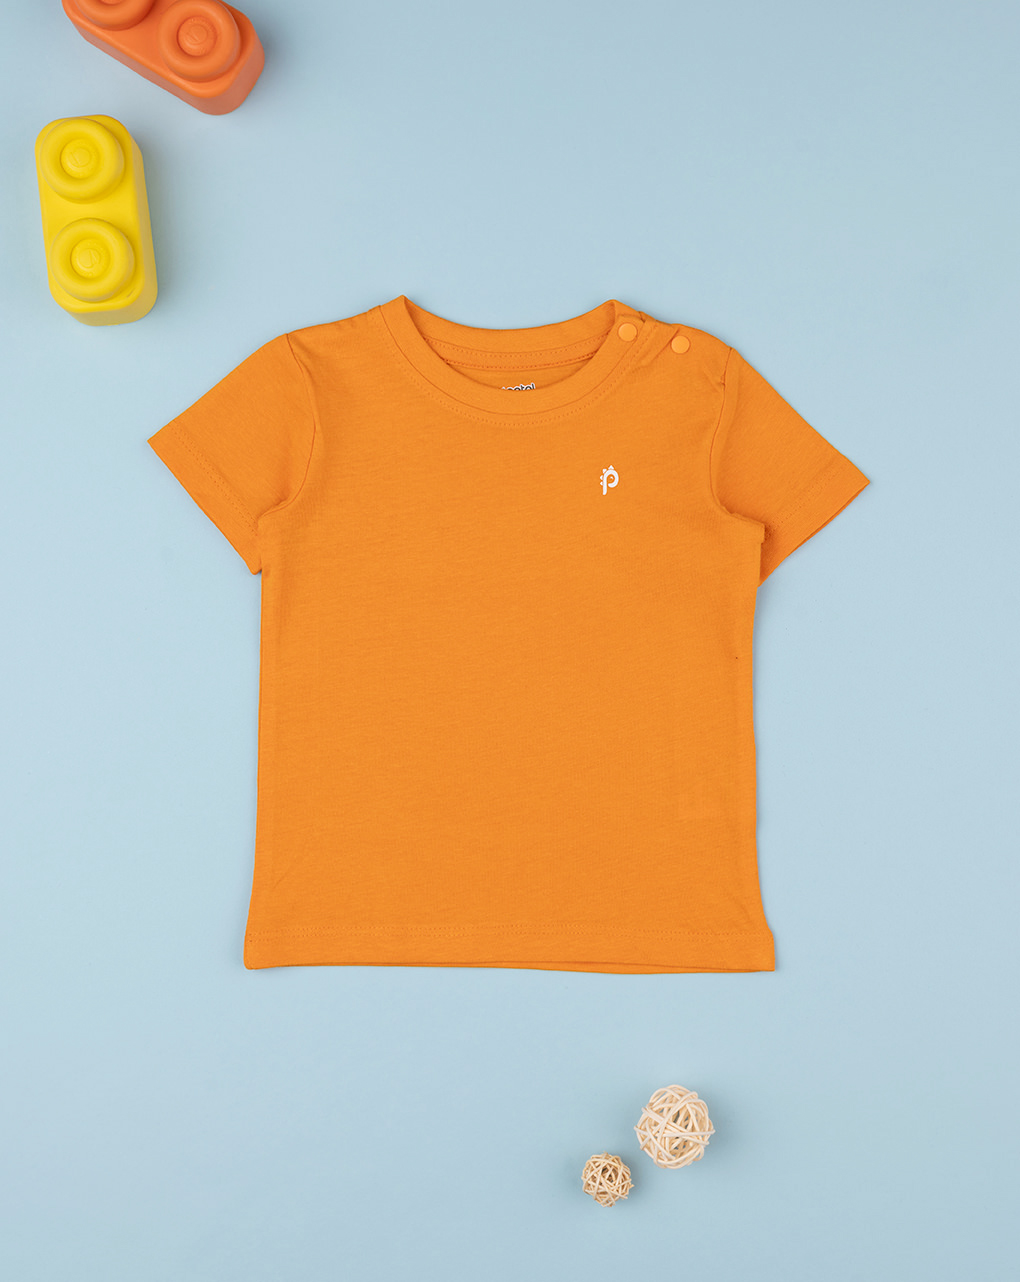 Maillot naranja de media manga para niño - Prénatal